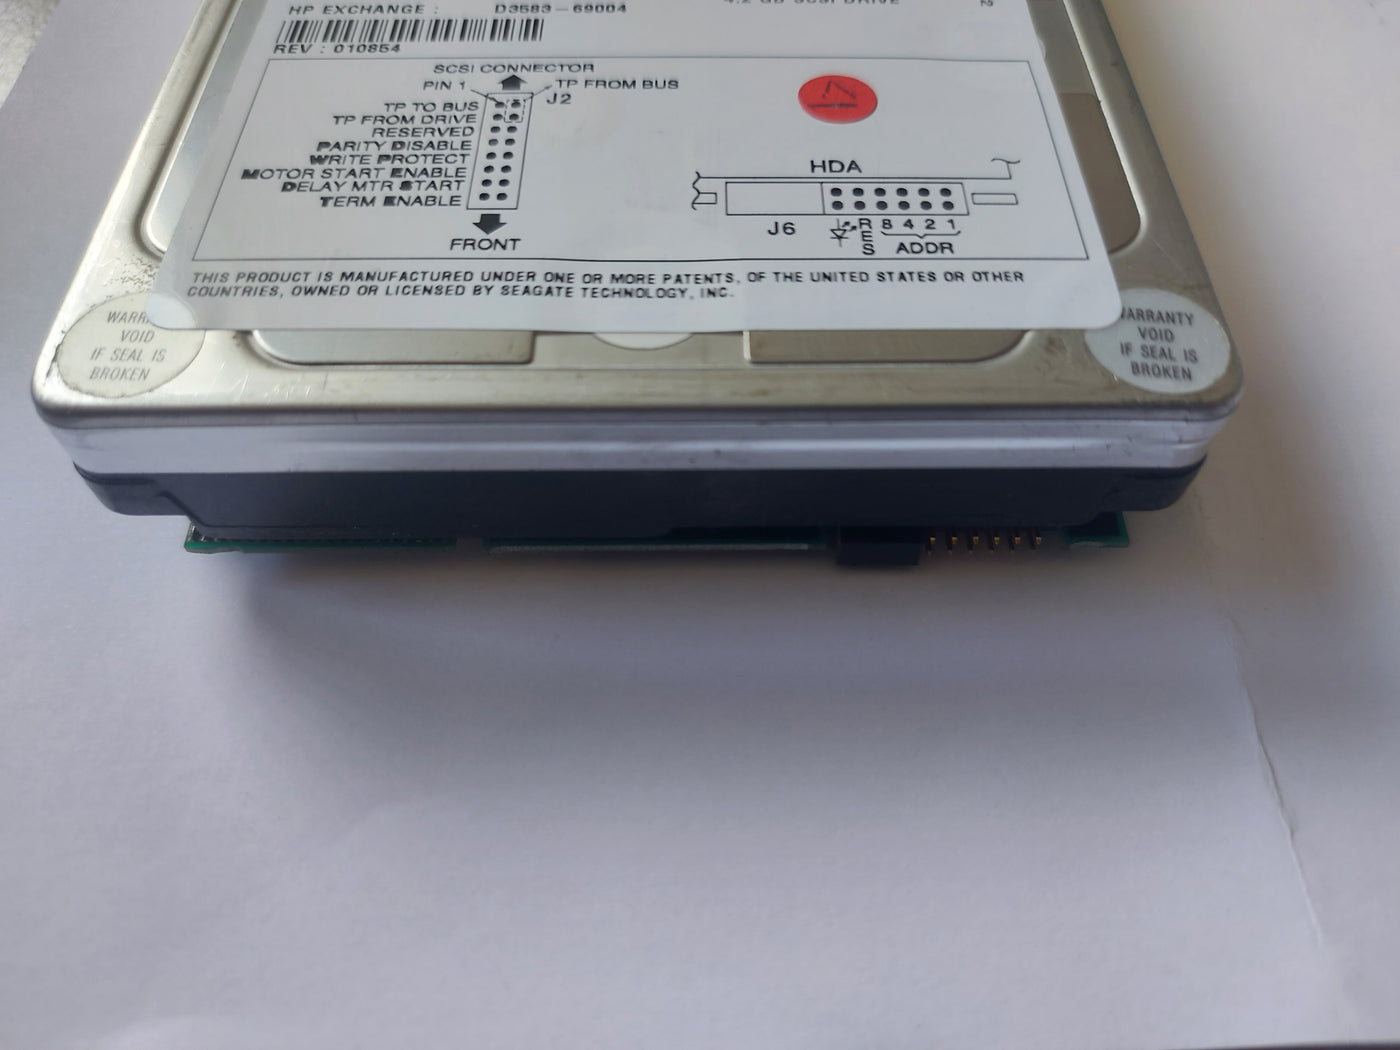 HP Seagate Barracuda 4GB 7200RPM Ultra Wide SCSI 80Pin 3.5" HDD ( D3583C 9J6003-040 D3583-60003 D3583-63004 D3583-69004 ) USED